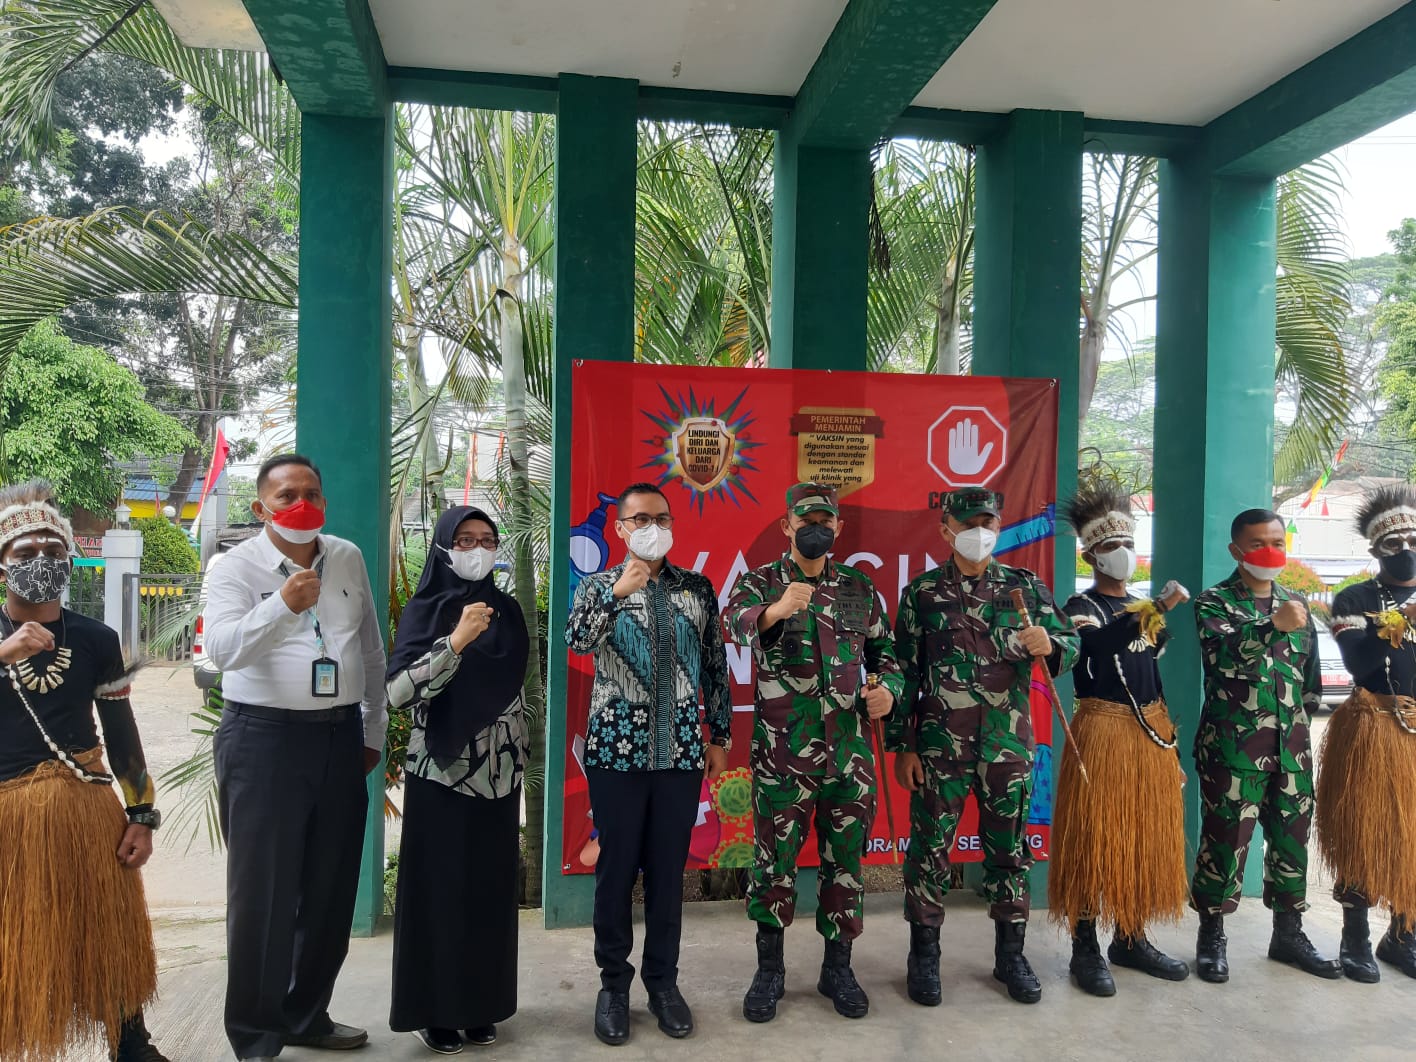 TNI Bintara Otonomi Khusus asal Papua yang berdandan lengkap dengan pakaian adat saat berswa foto bersama di Kantor Kecamatan Serpong, Kota Tangerang Selatan,Kamis, 19 Agustus 2021.